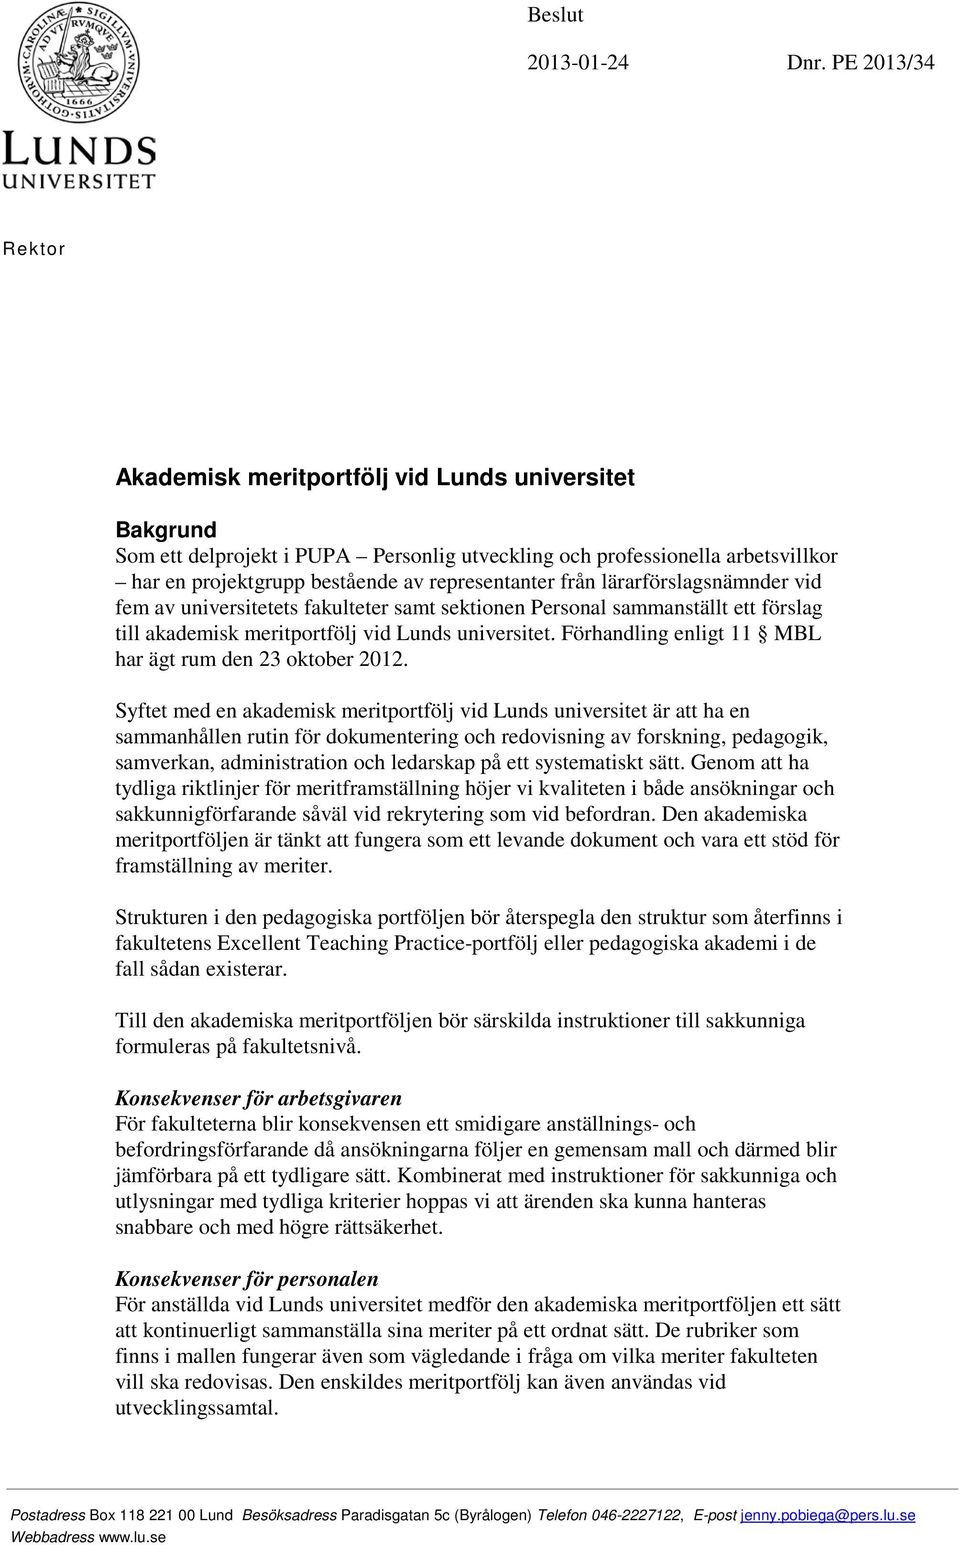 representanter från lärarförslagsnämnder vid fem av universitetets fakulteter samt sektionen Personal sammanställt ett förslag till akademisk meritportfölj vid Lunds universitet.